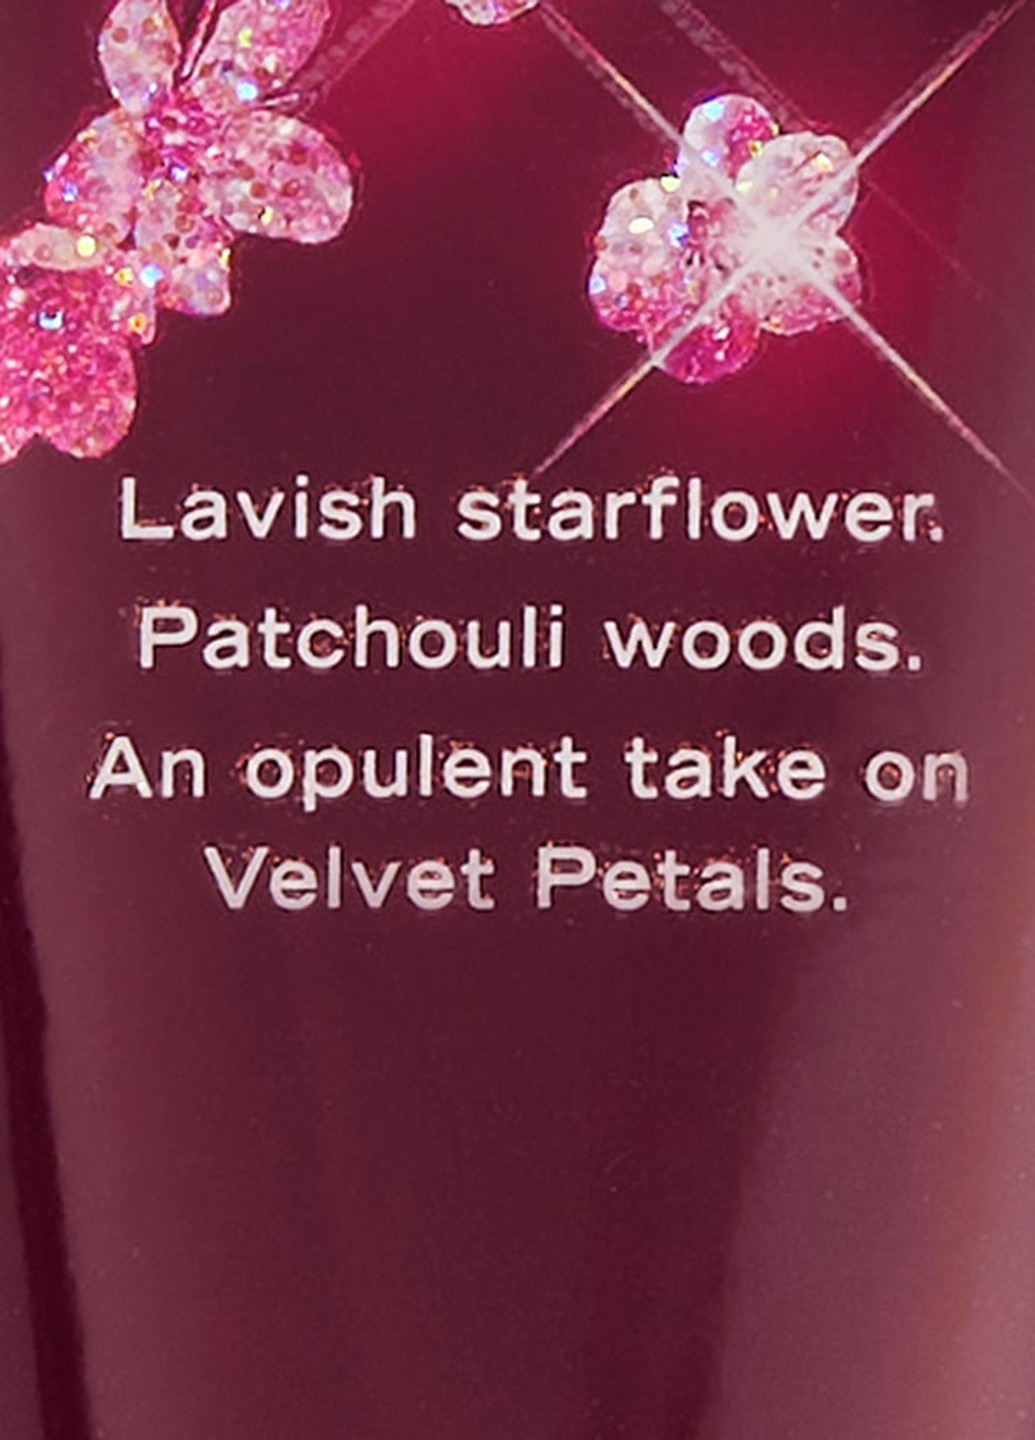 Набір Velvet Petals Luxe (2 пр.) Victoria's Secret